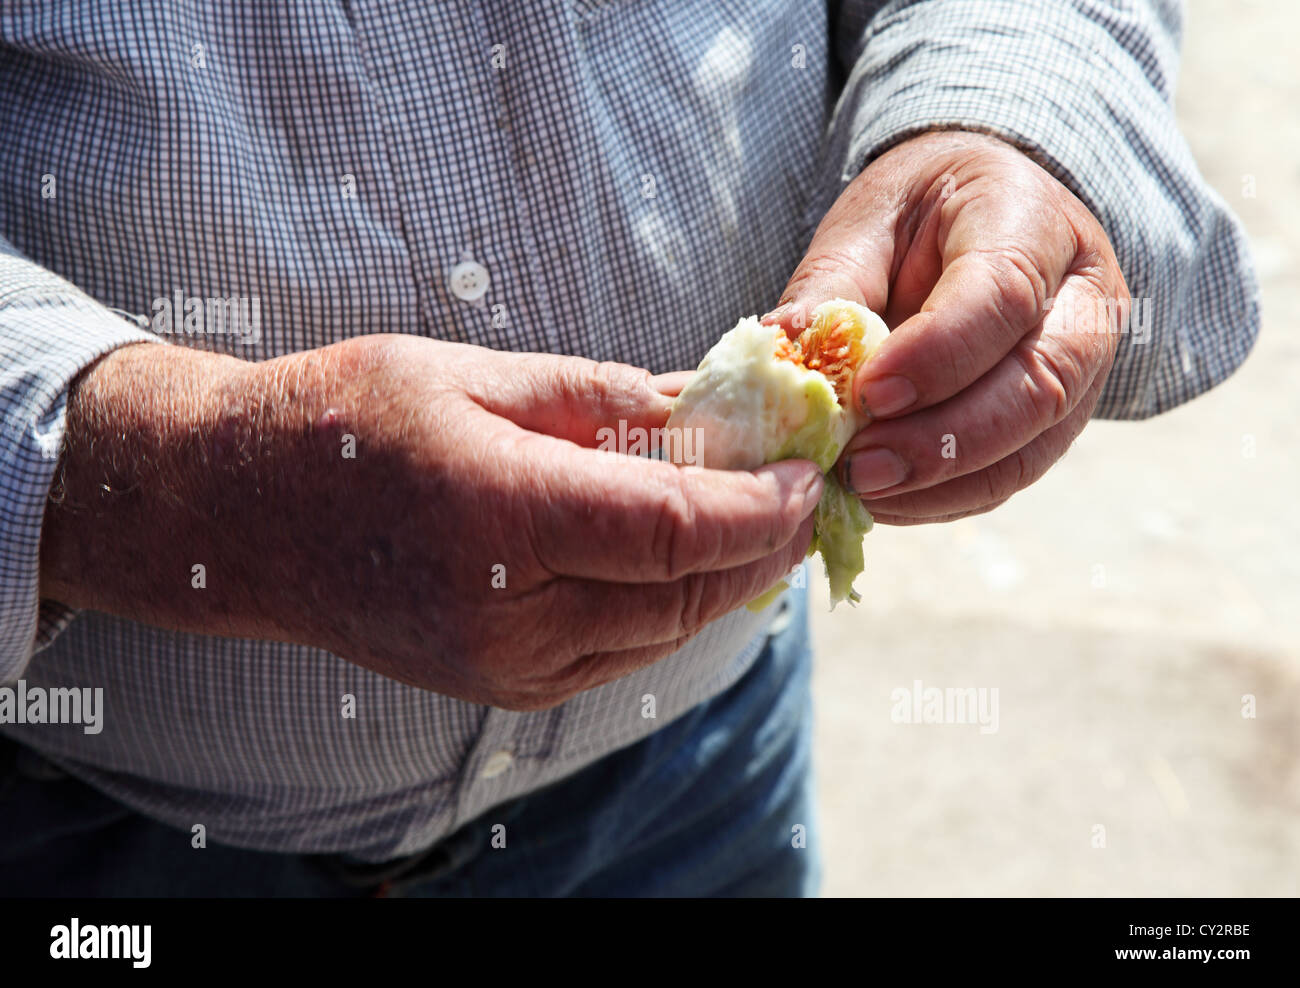 Detailansicht des griechischen Mannes Hand peeling keinen Deut um Essen, Knossos, Kreta, Griechenland Stockfoto